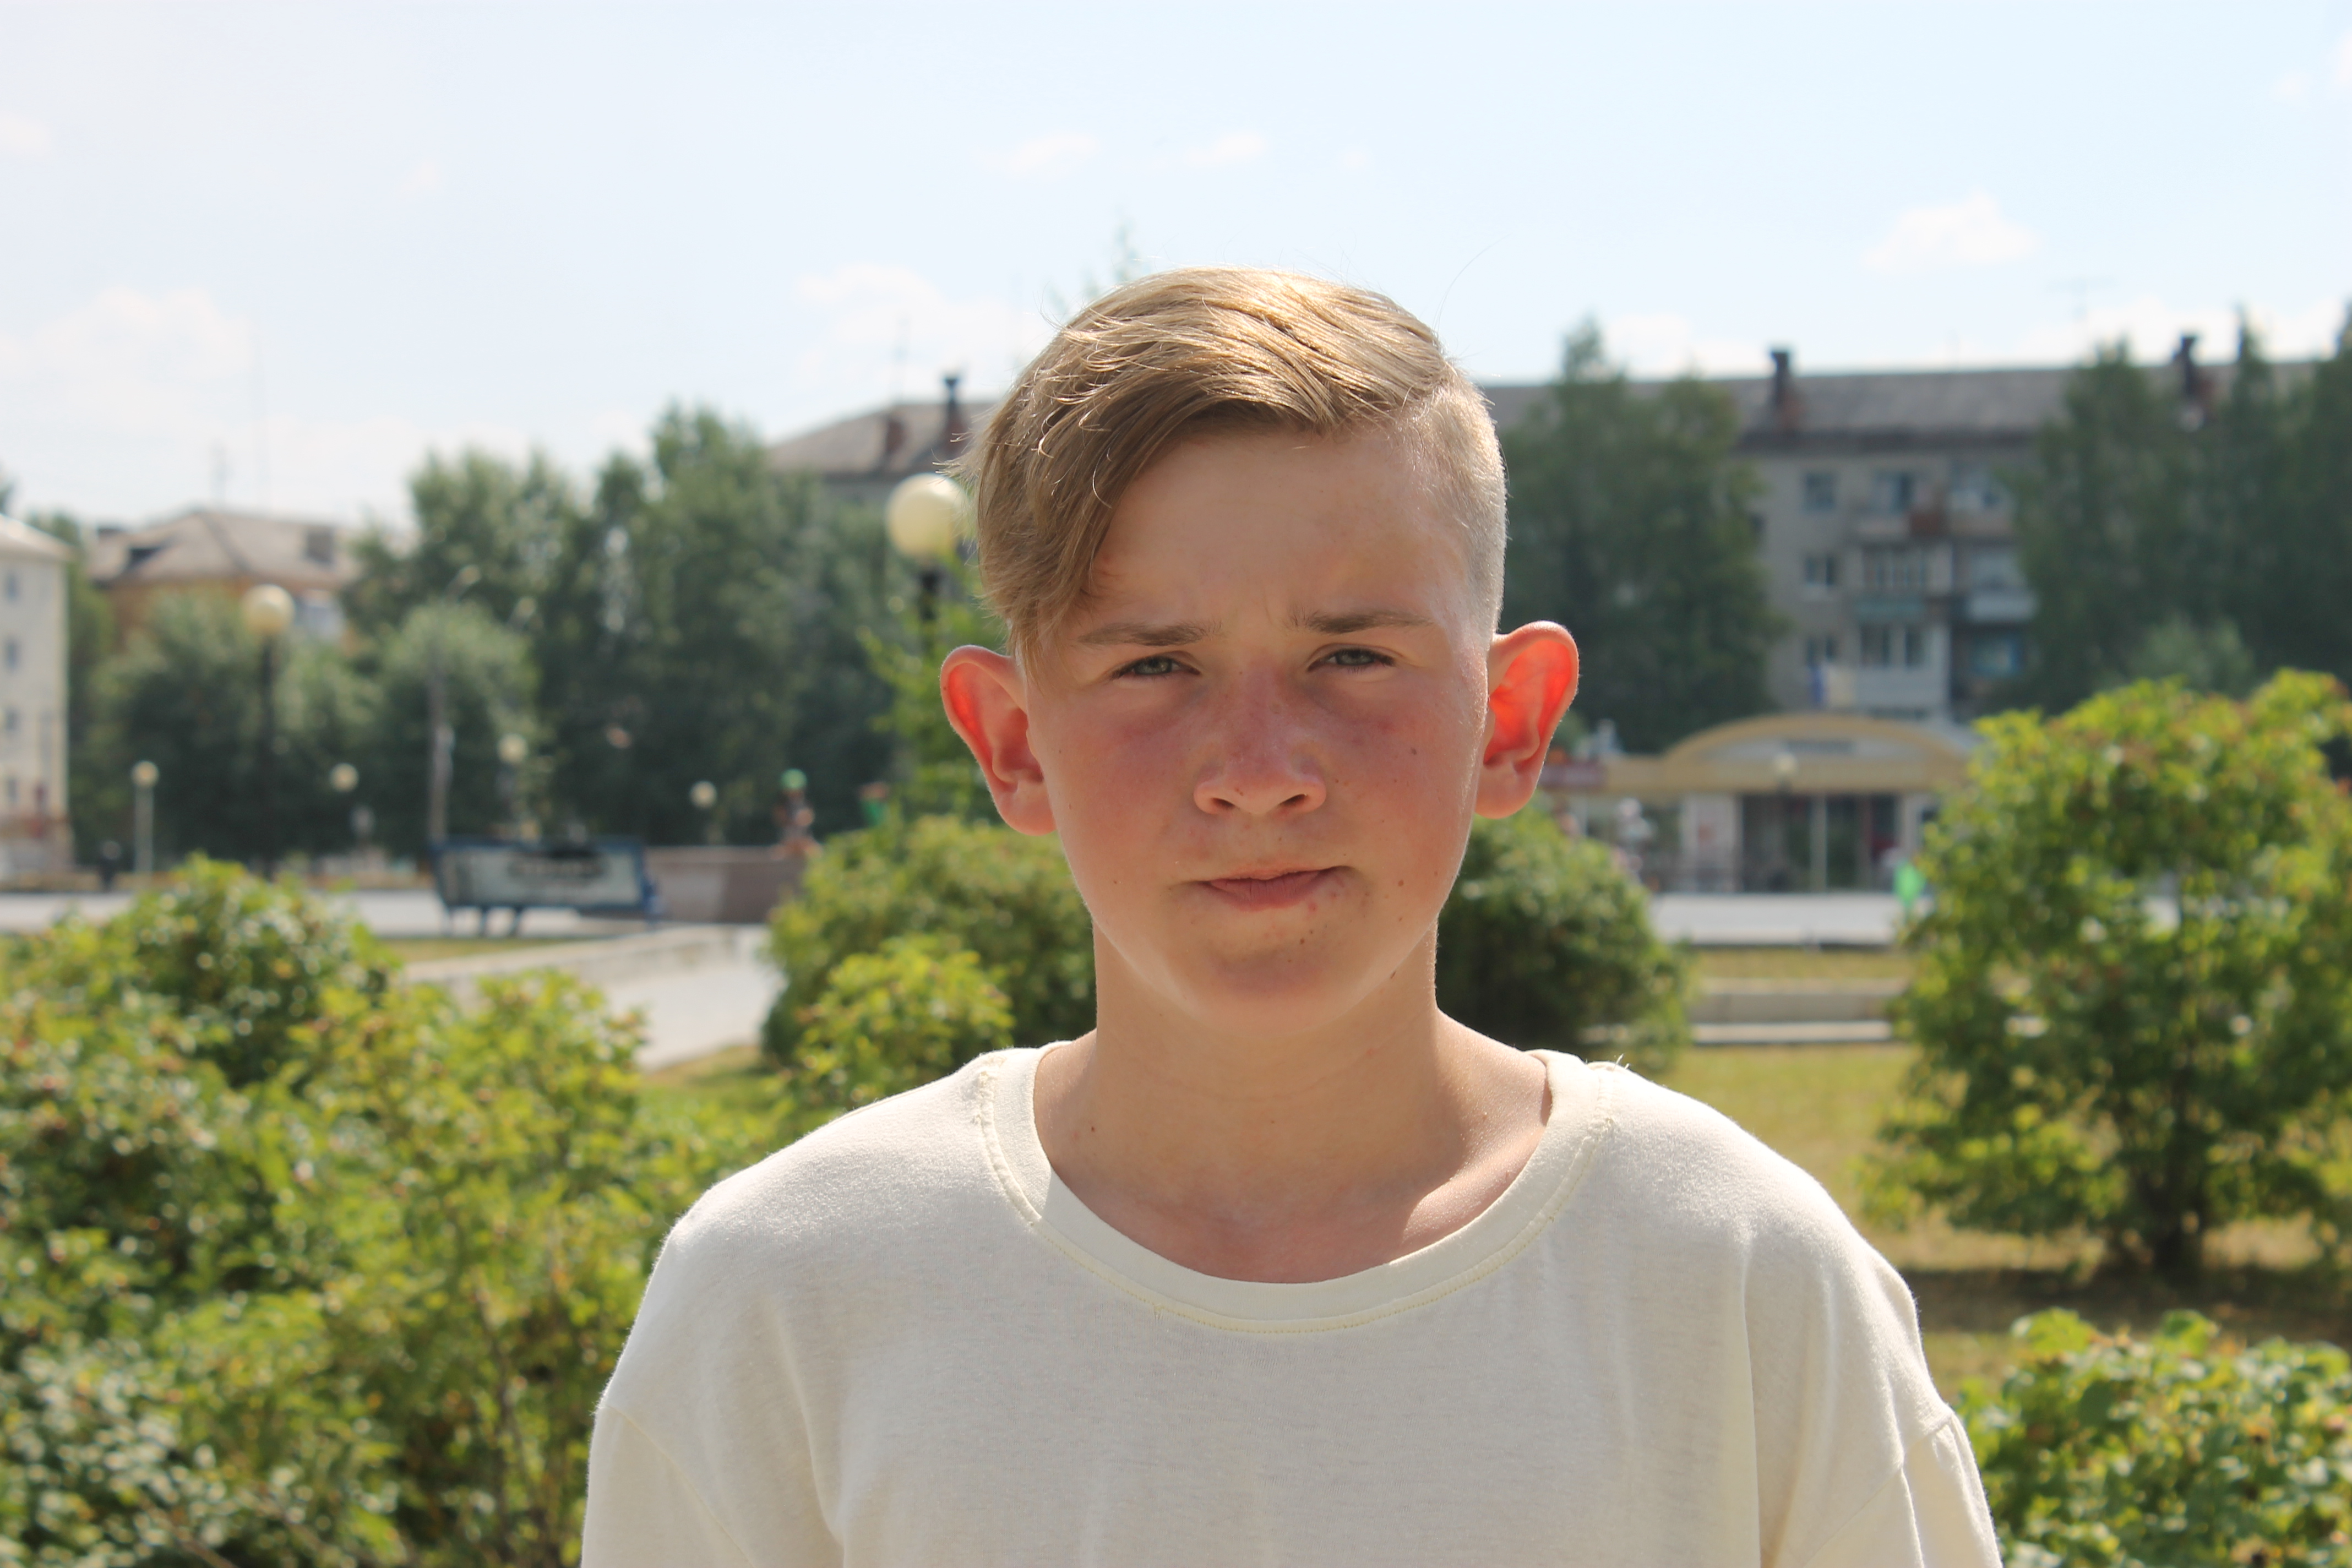 Областной главк МЧС планирует наградить серовчанина Максима Бояршинова за спасение утопающего